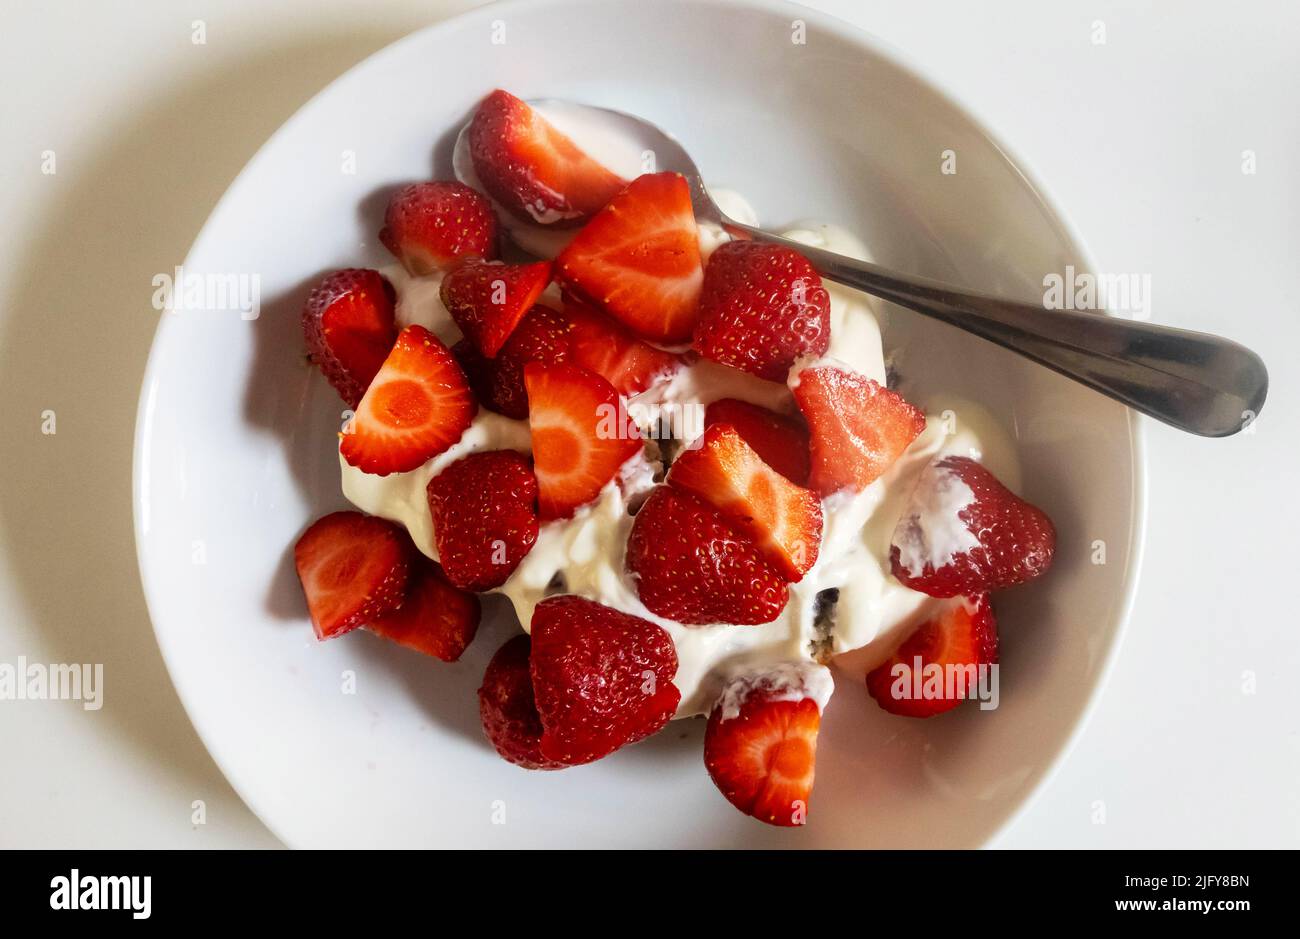 Strawberries and yogurt Stock Photo